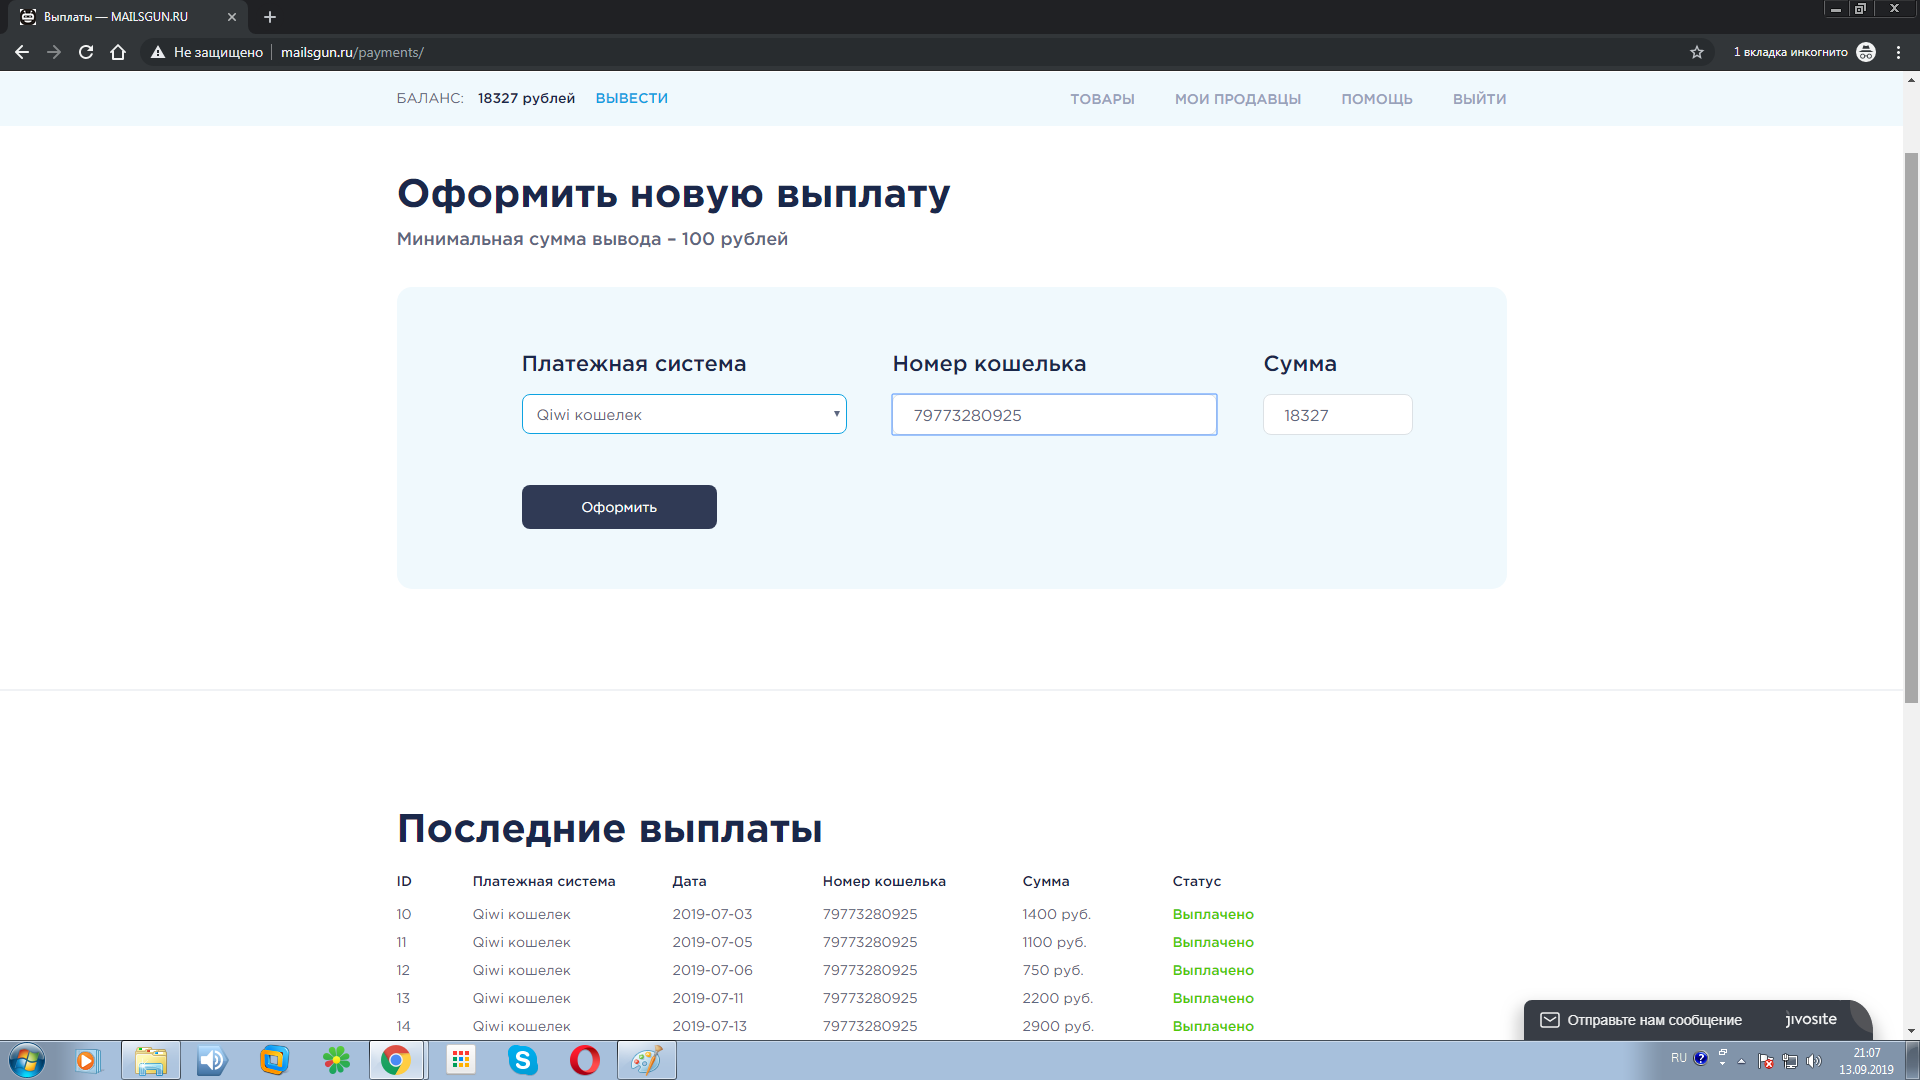 Партнерская сеть mailsgun.ru - привлеченные продавцы